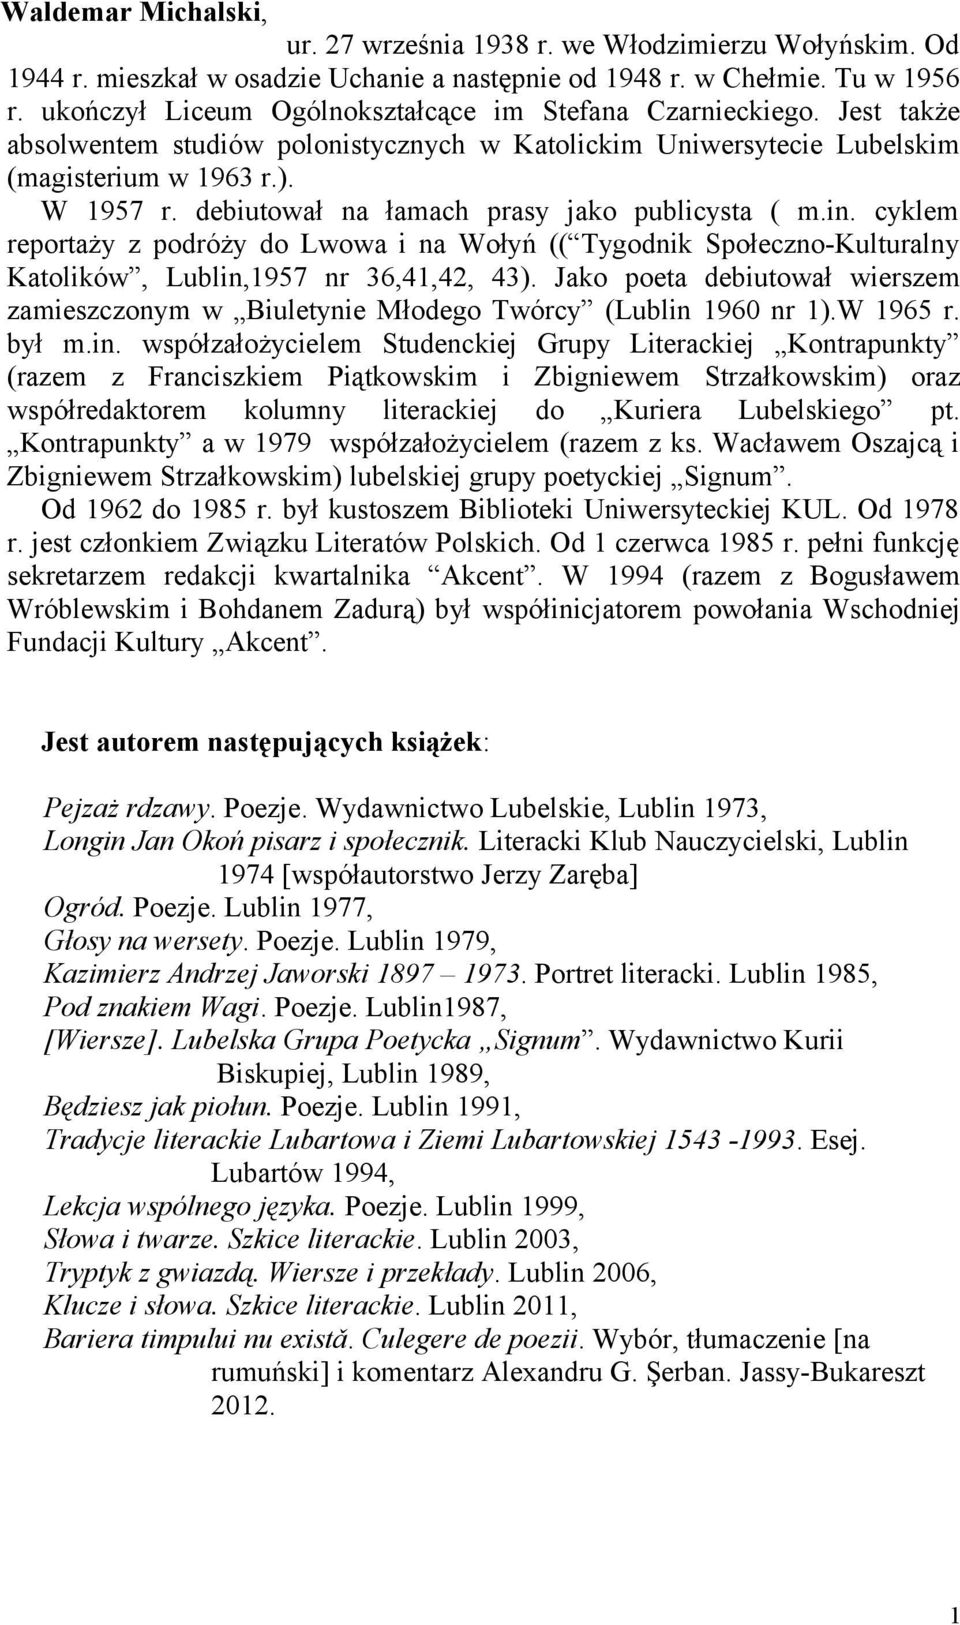 debiutował na łamach prasy jako publicysta ( m.in. cyklem reportaży z podróży do Lwowa i na Wołyń (( Tygodnik Społeczno-Kulturalny Katolików, Lublin,1957 nr 36,41,42, 43).